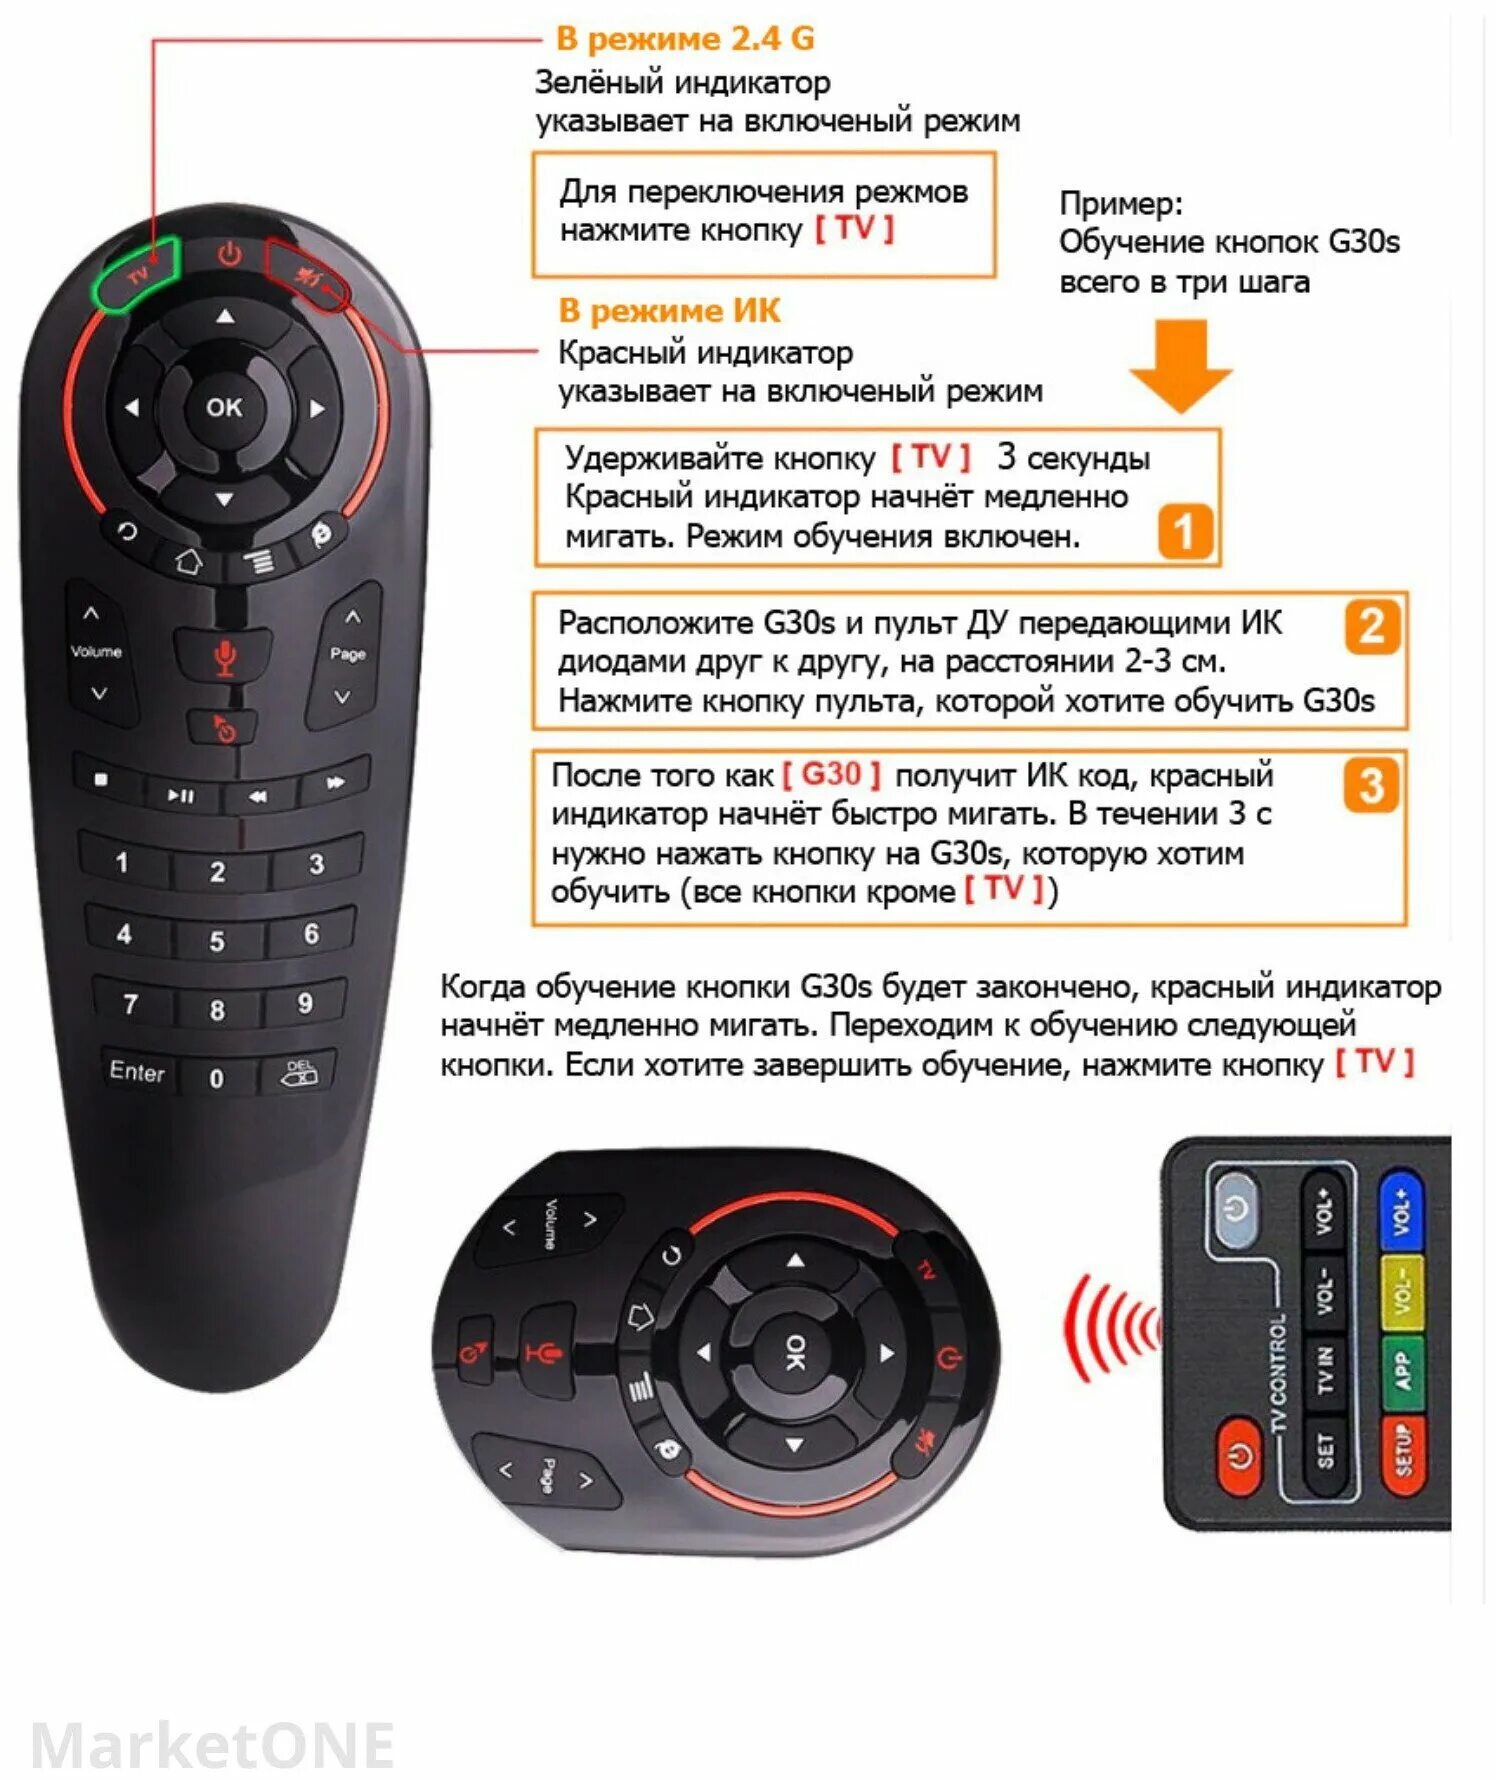 Пульт андроида голосовой. G30s пульт Air Mouse. Универсальный пульт Air Mouse g10s с гироскопом. Пульт Ду g10 аэромышь, гироскоп. Пульт Universal Android g10s ( Air Mouse + Voice Remote Control).